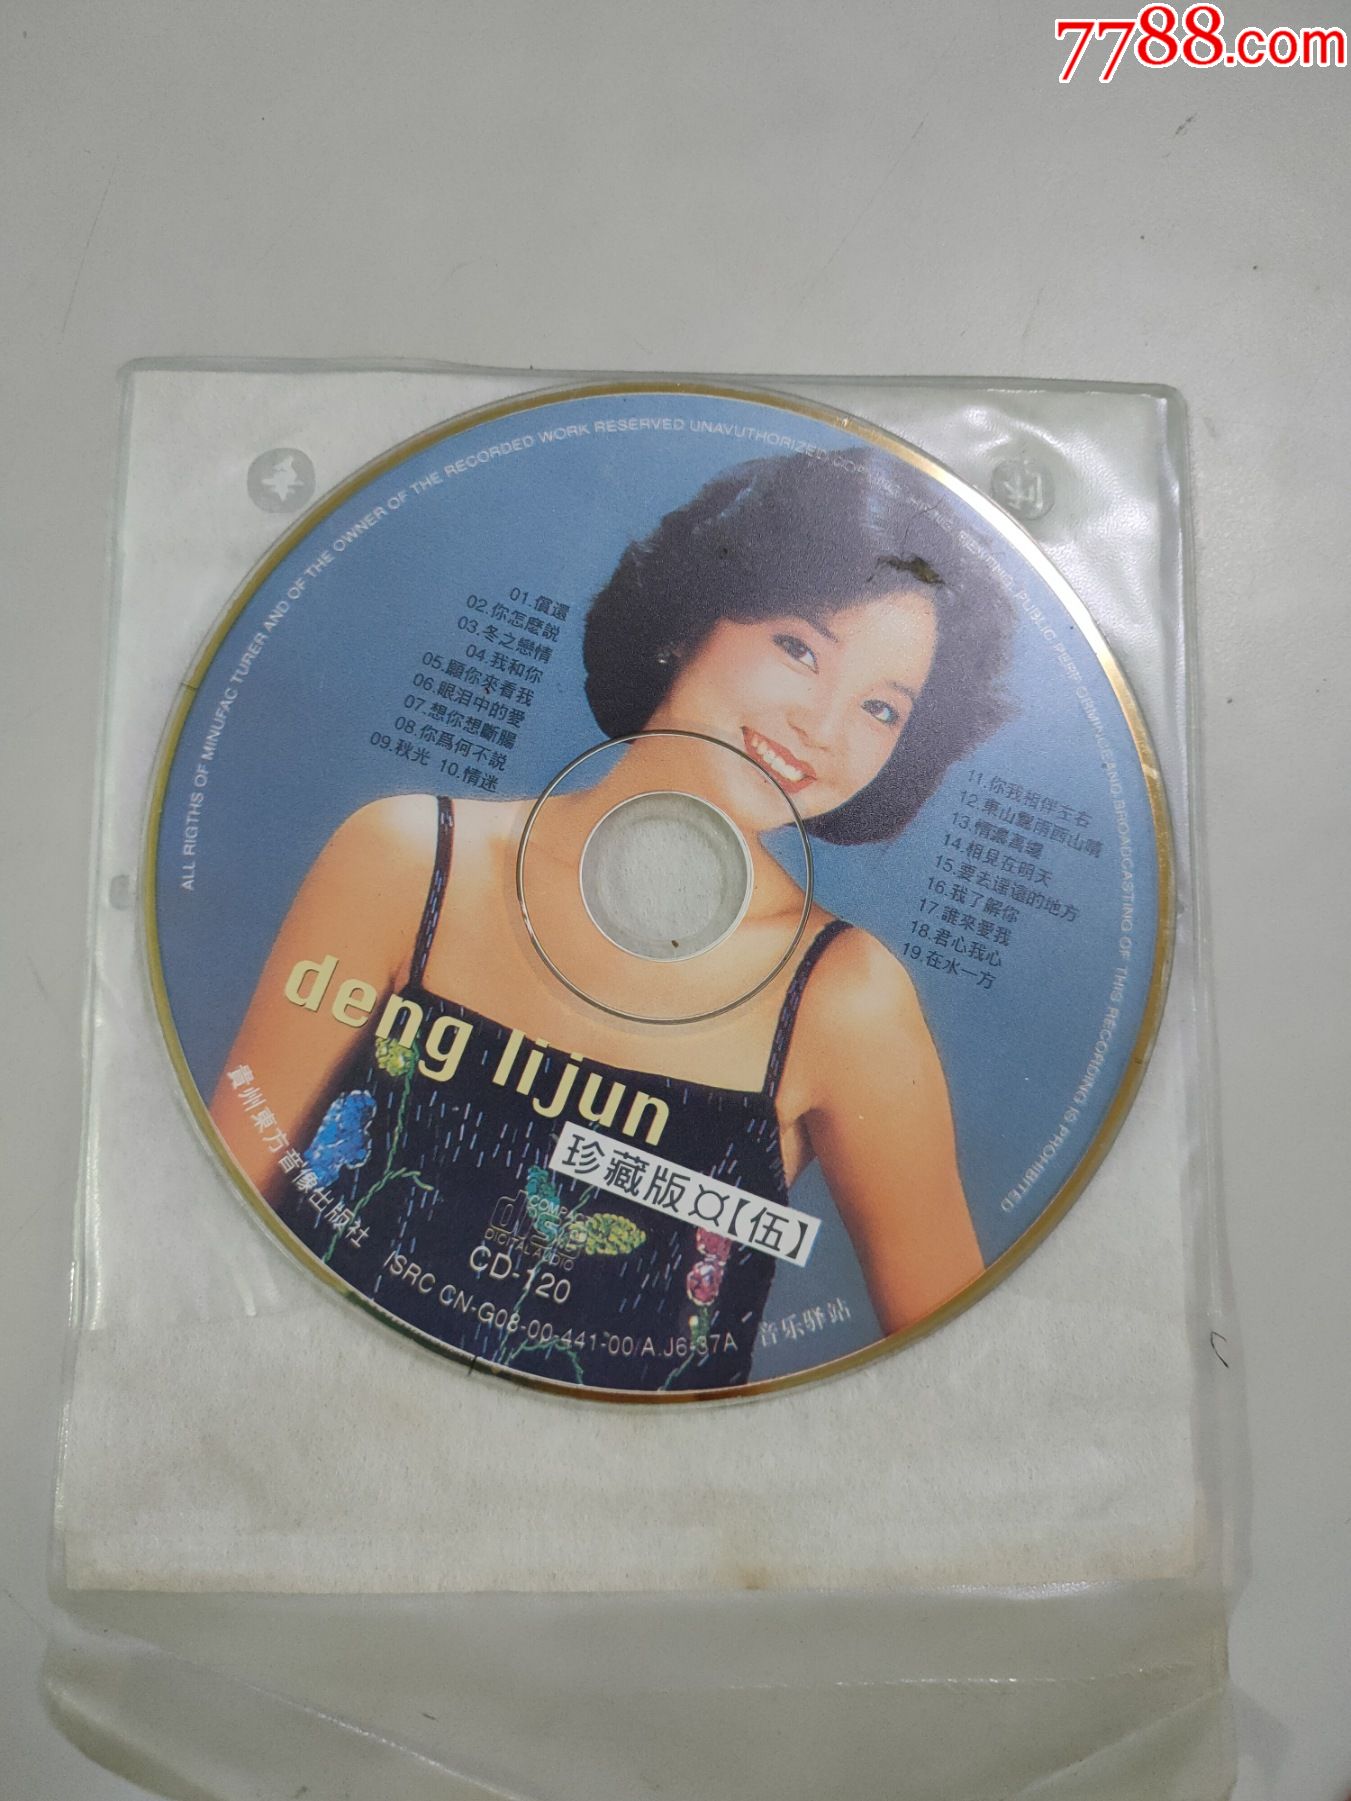 邓丽君珍藏版五cd1张光盘此版本珍贵